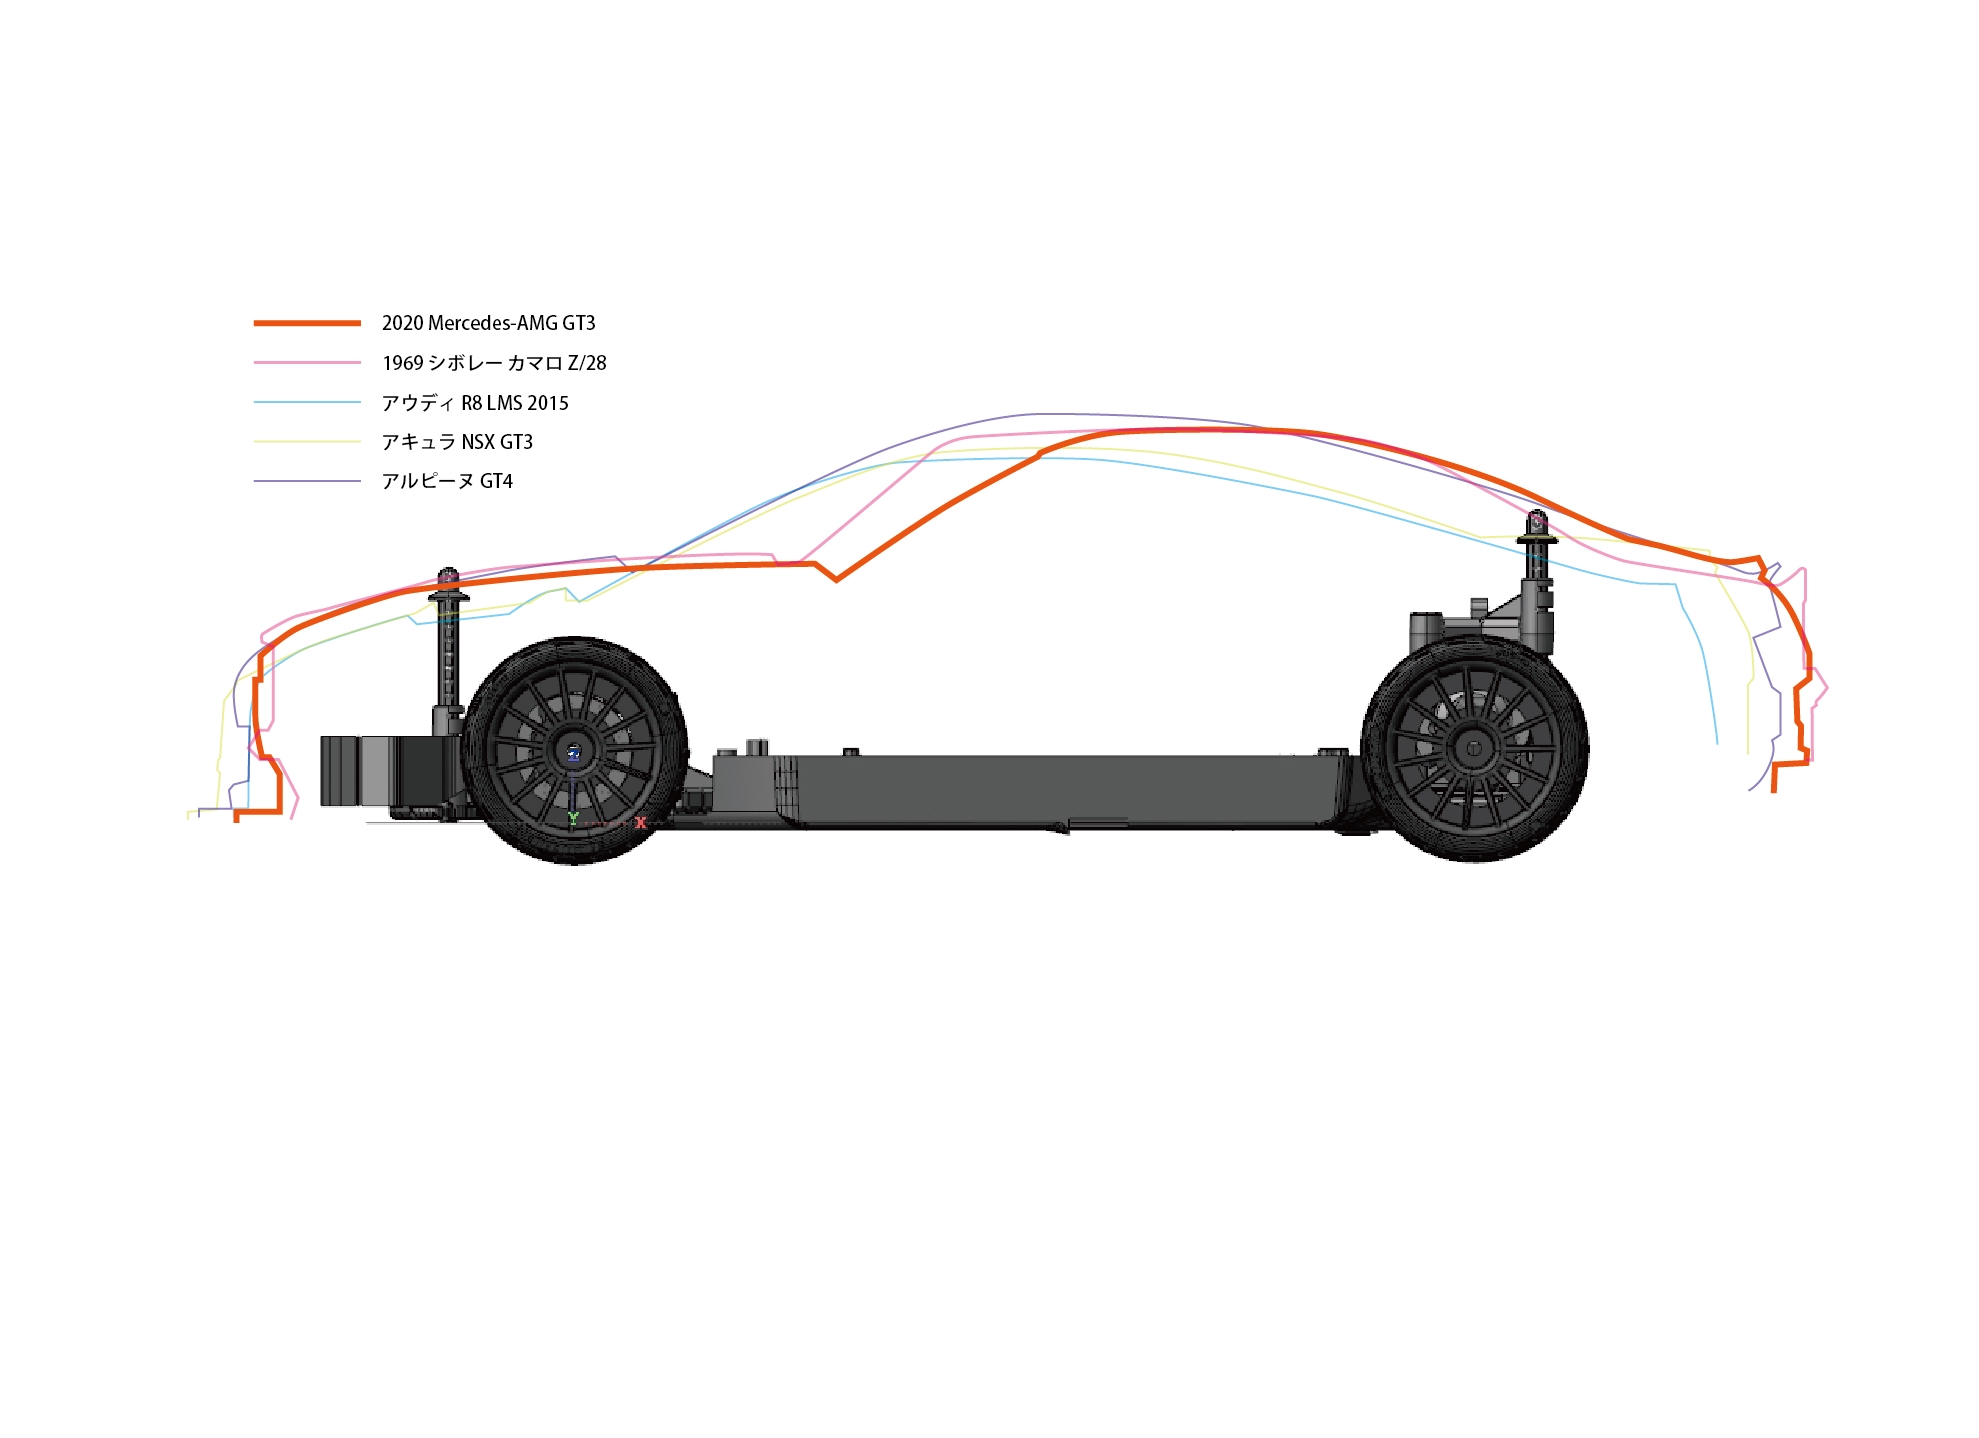 2020 メルセデス AMG GT3 のご紹介 | KYOSHO RC BLOG